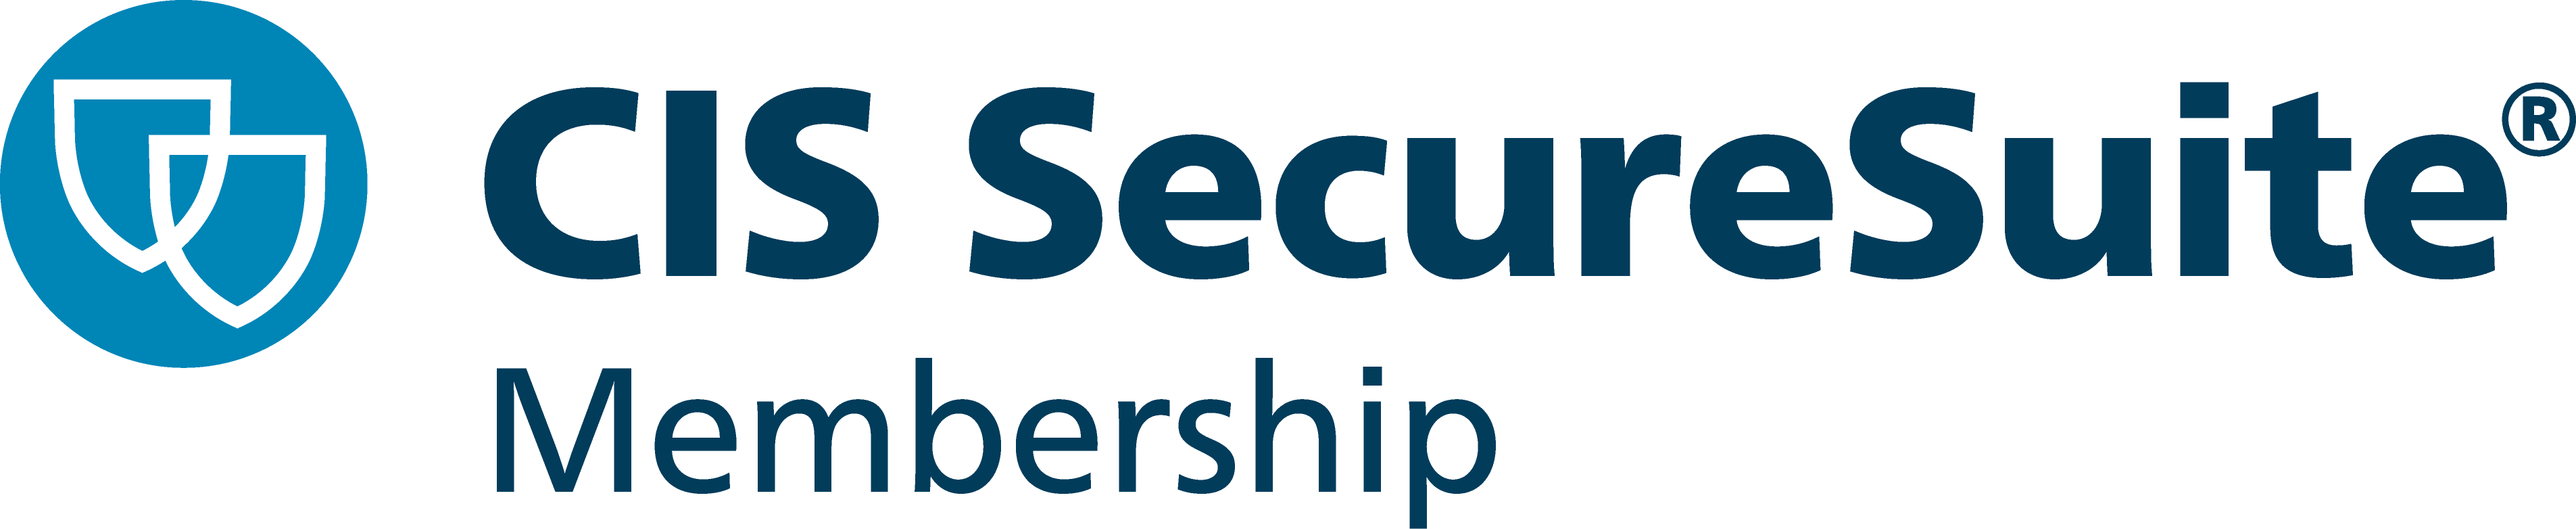 CIS SecureSuite Membership